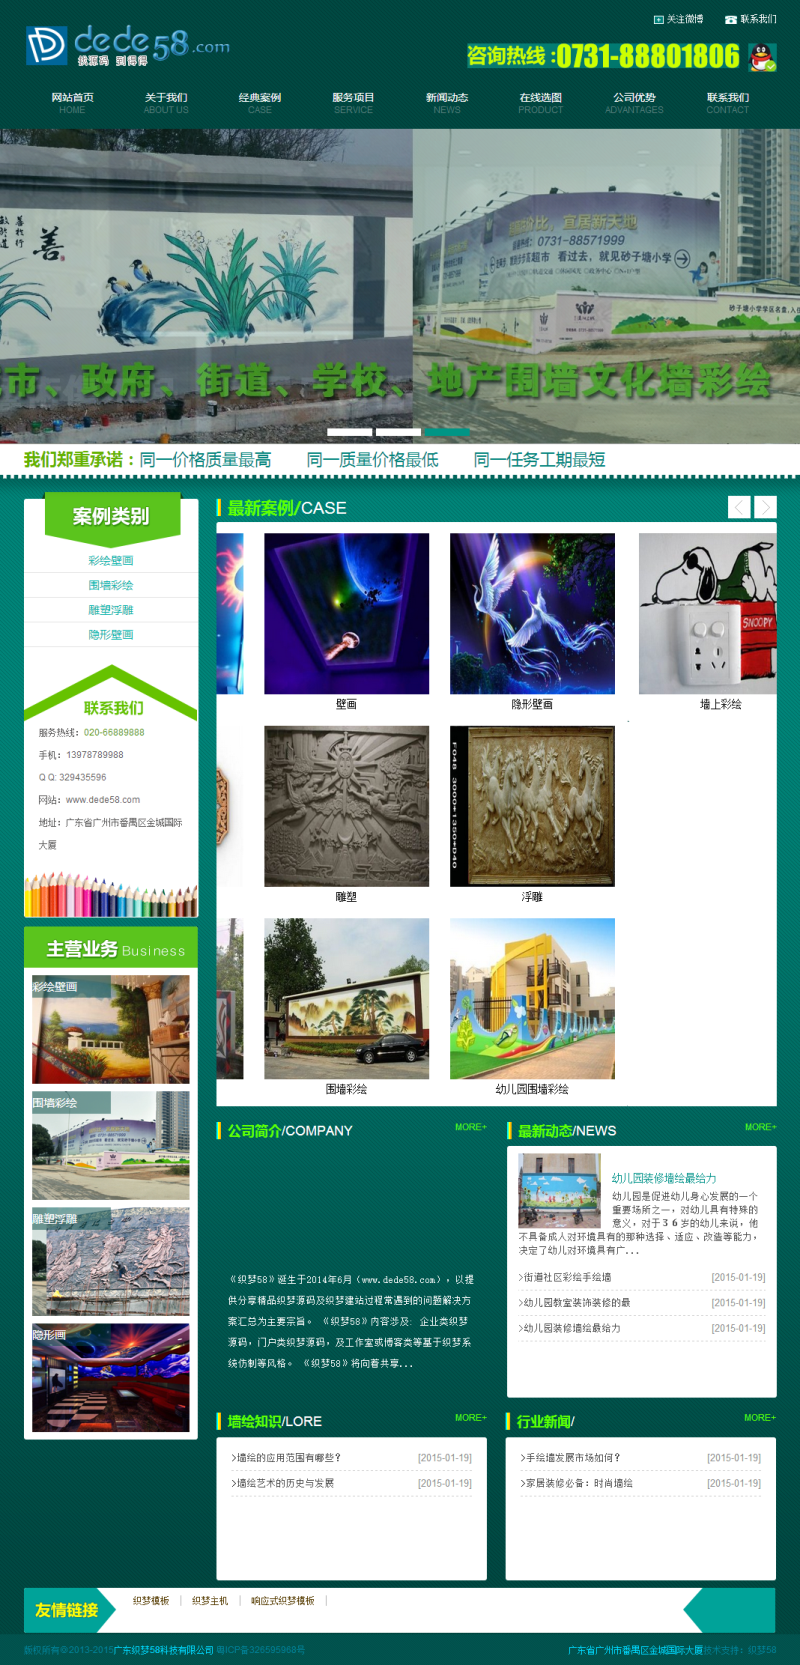 绿色墙绘装饰设计公司网站织梦模板 第1张